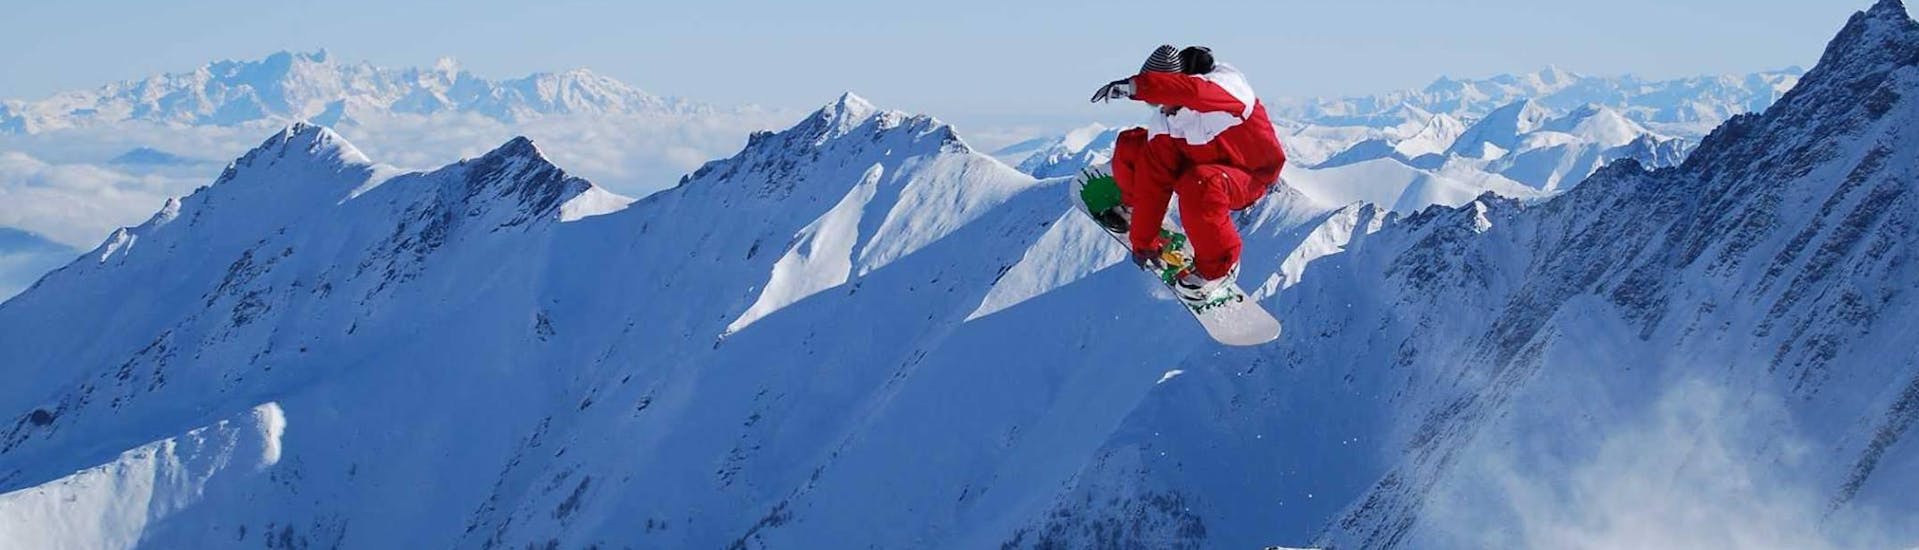 Ein Snowboarder fliegt durch die Luft beim Snowboardkurs für Erwachsene und Fortgeschrittene mit der Skischule Ski Dome Viehhofen.